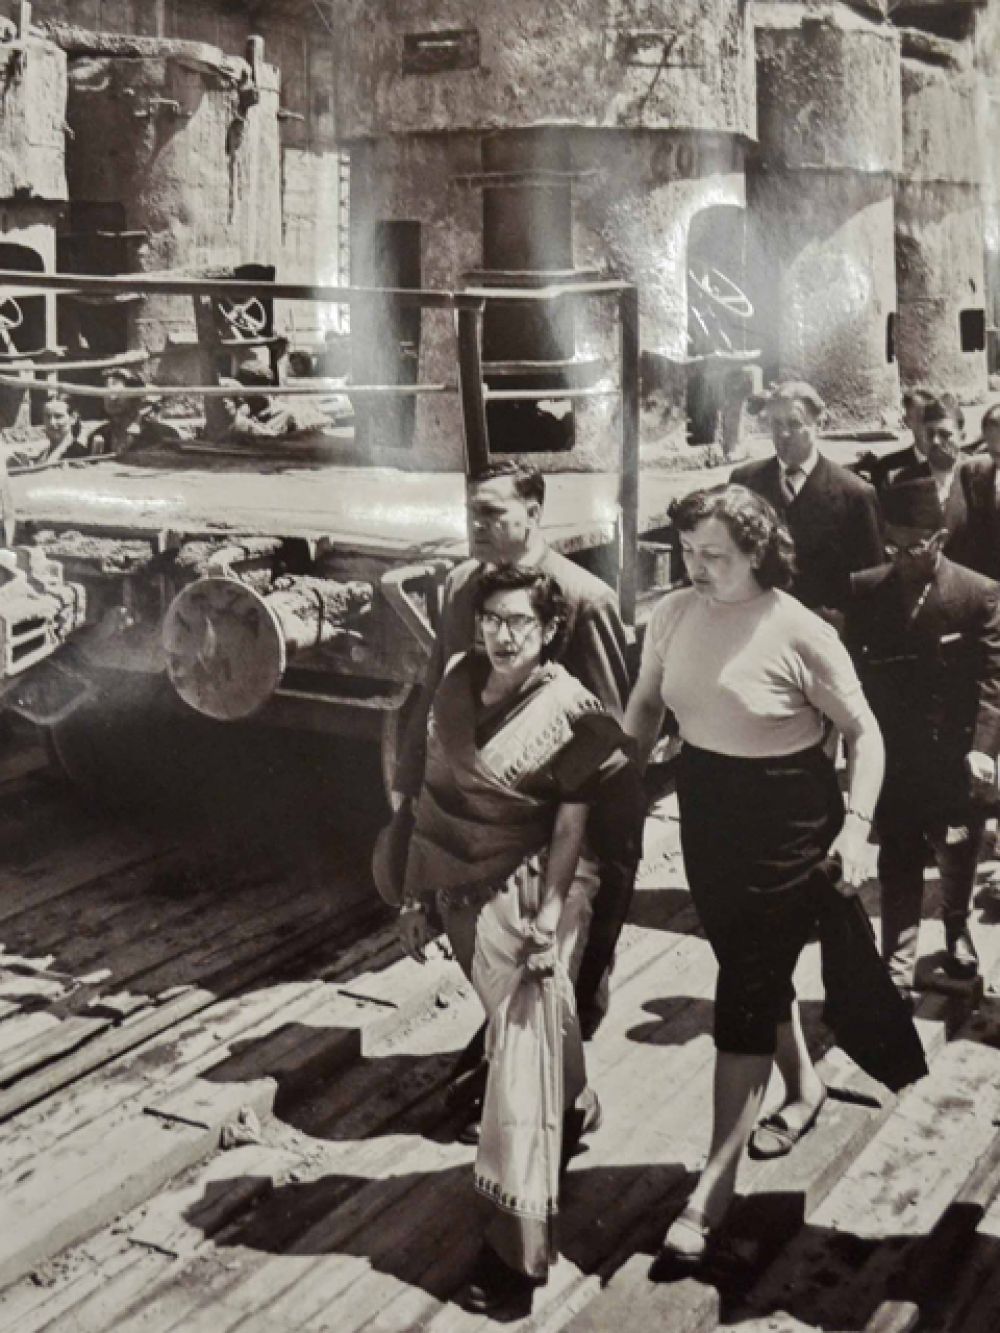 Ратна Раджья Лакшми Деви, королева Непала во время посещения Сталинградской ГЭС, 1958 год.